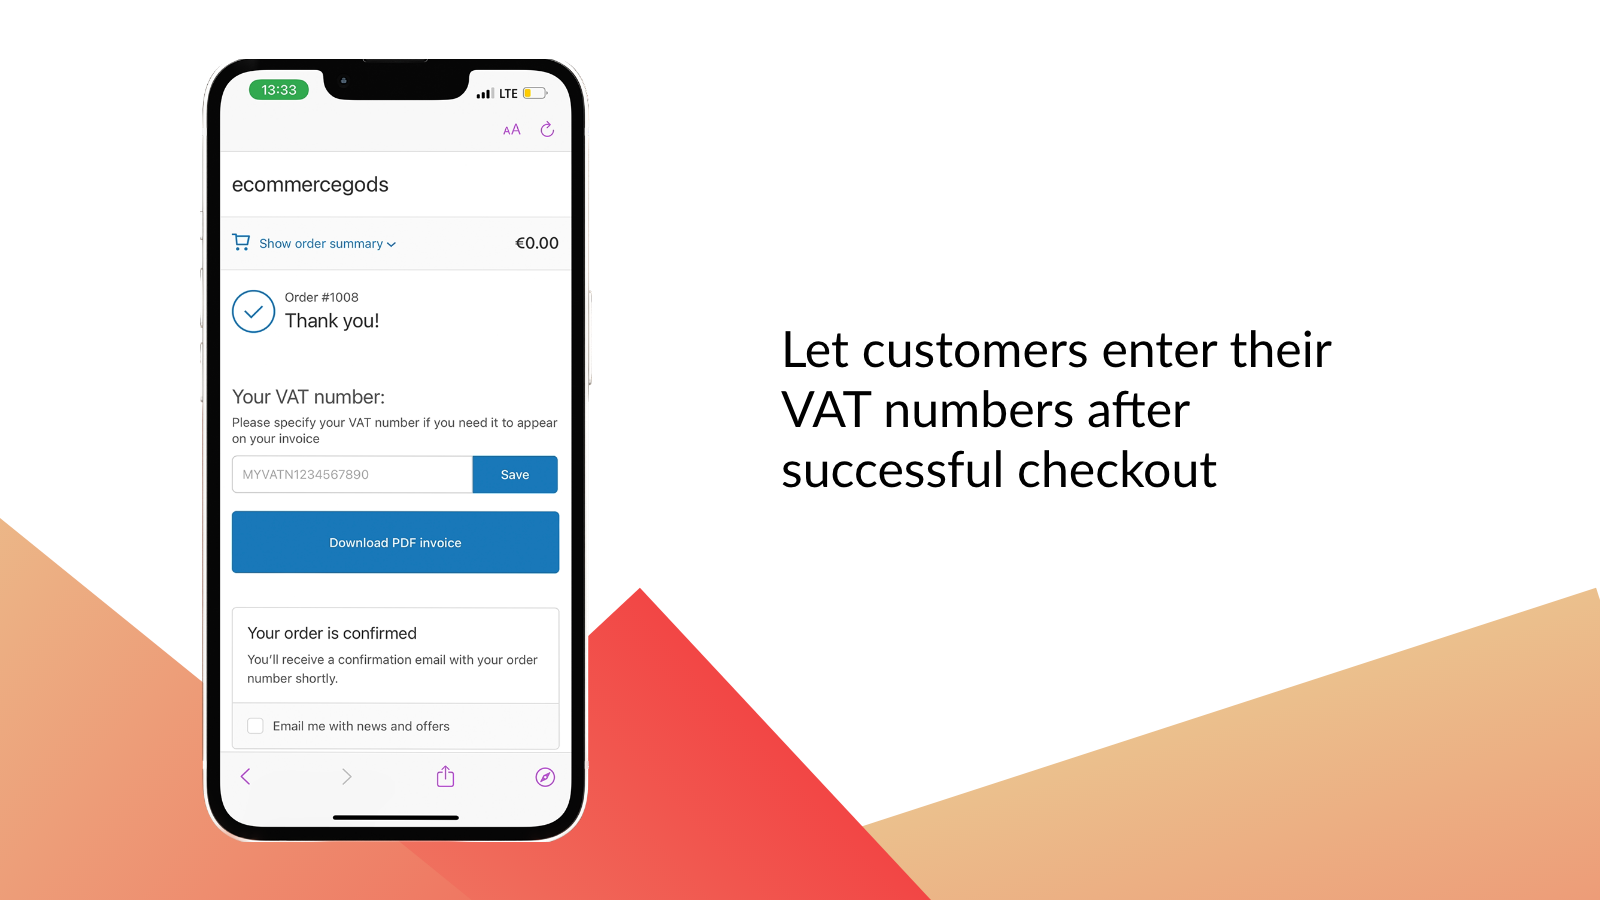 Permite a los clientes introducir sus números de IVA después de una compra exitosa